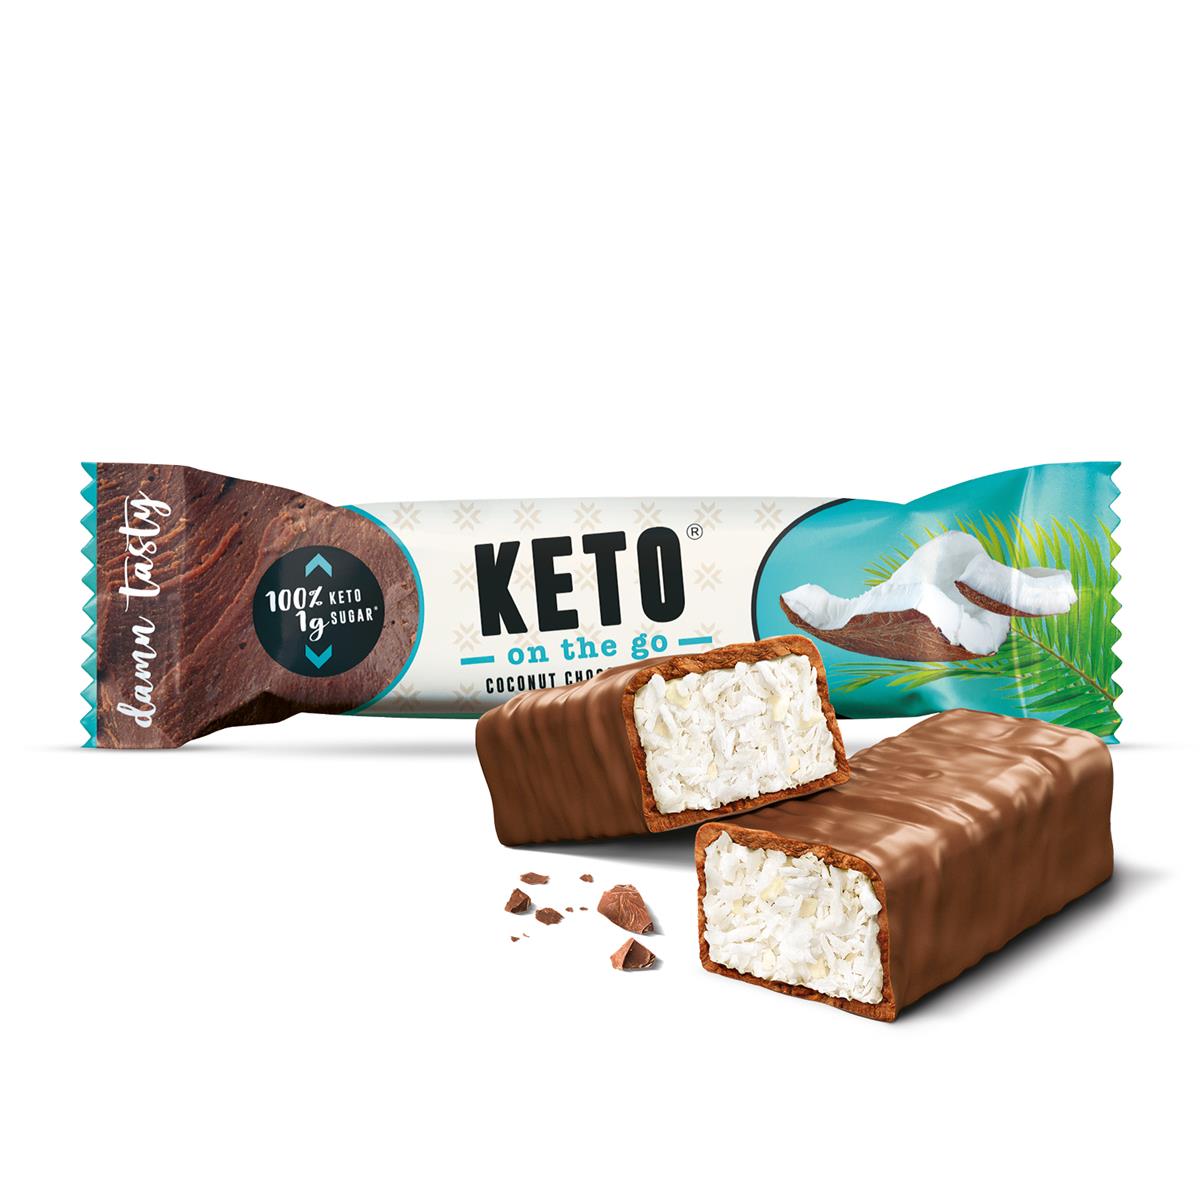 KETO on the go Coconut Chocolate Bar_EUR 1,49_2